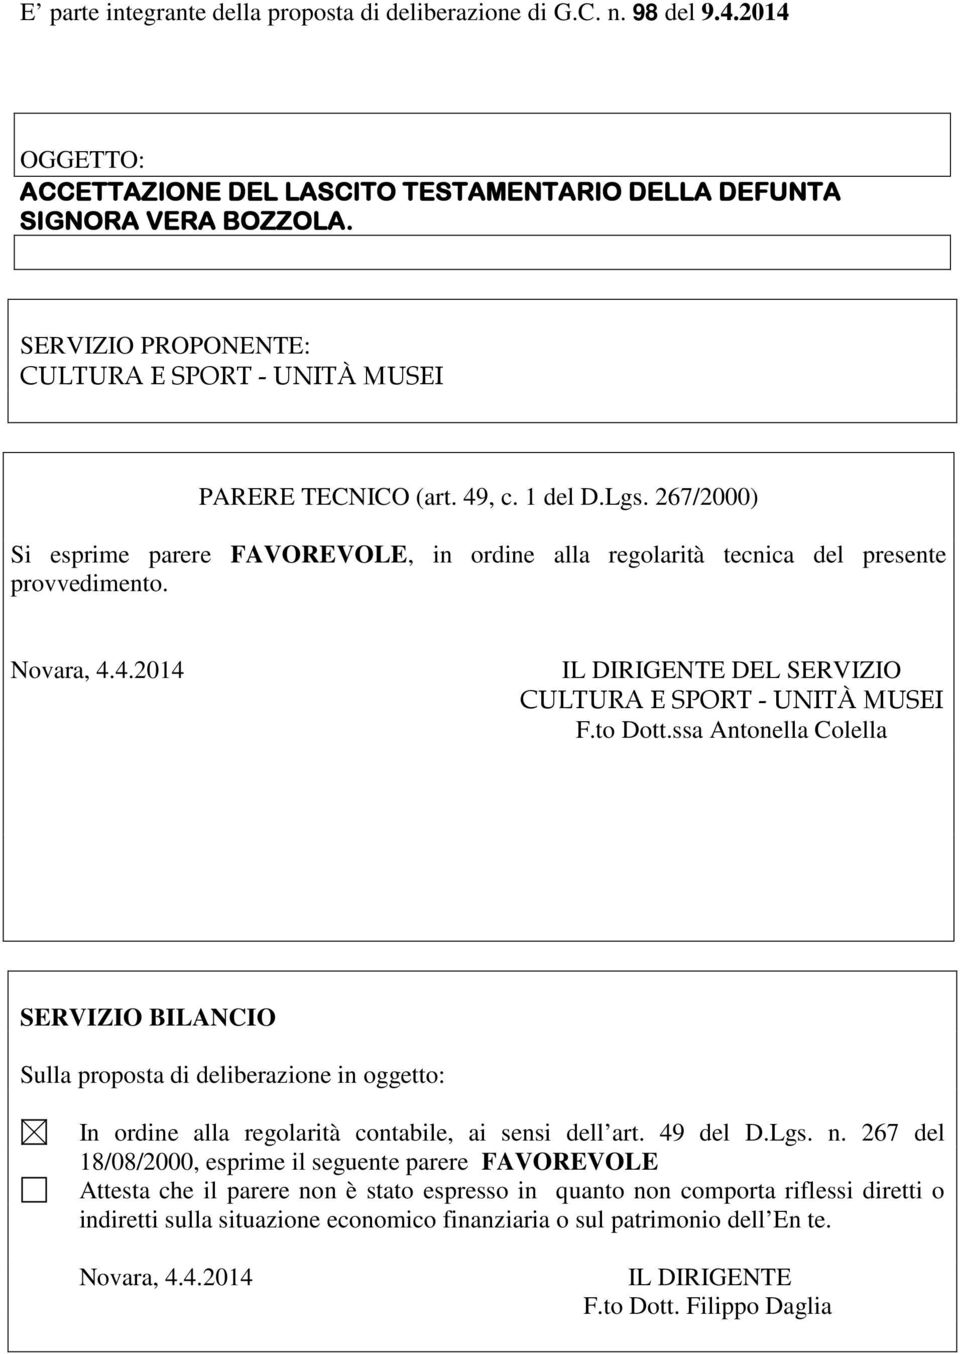 Novara, 4.4.2014 IL DIRIGENTE DEL SERVIZIO CULTURA E SPORT - UNITÀ MUSEI F.to Dott.